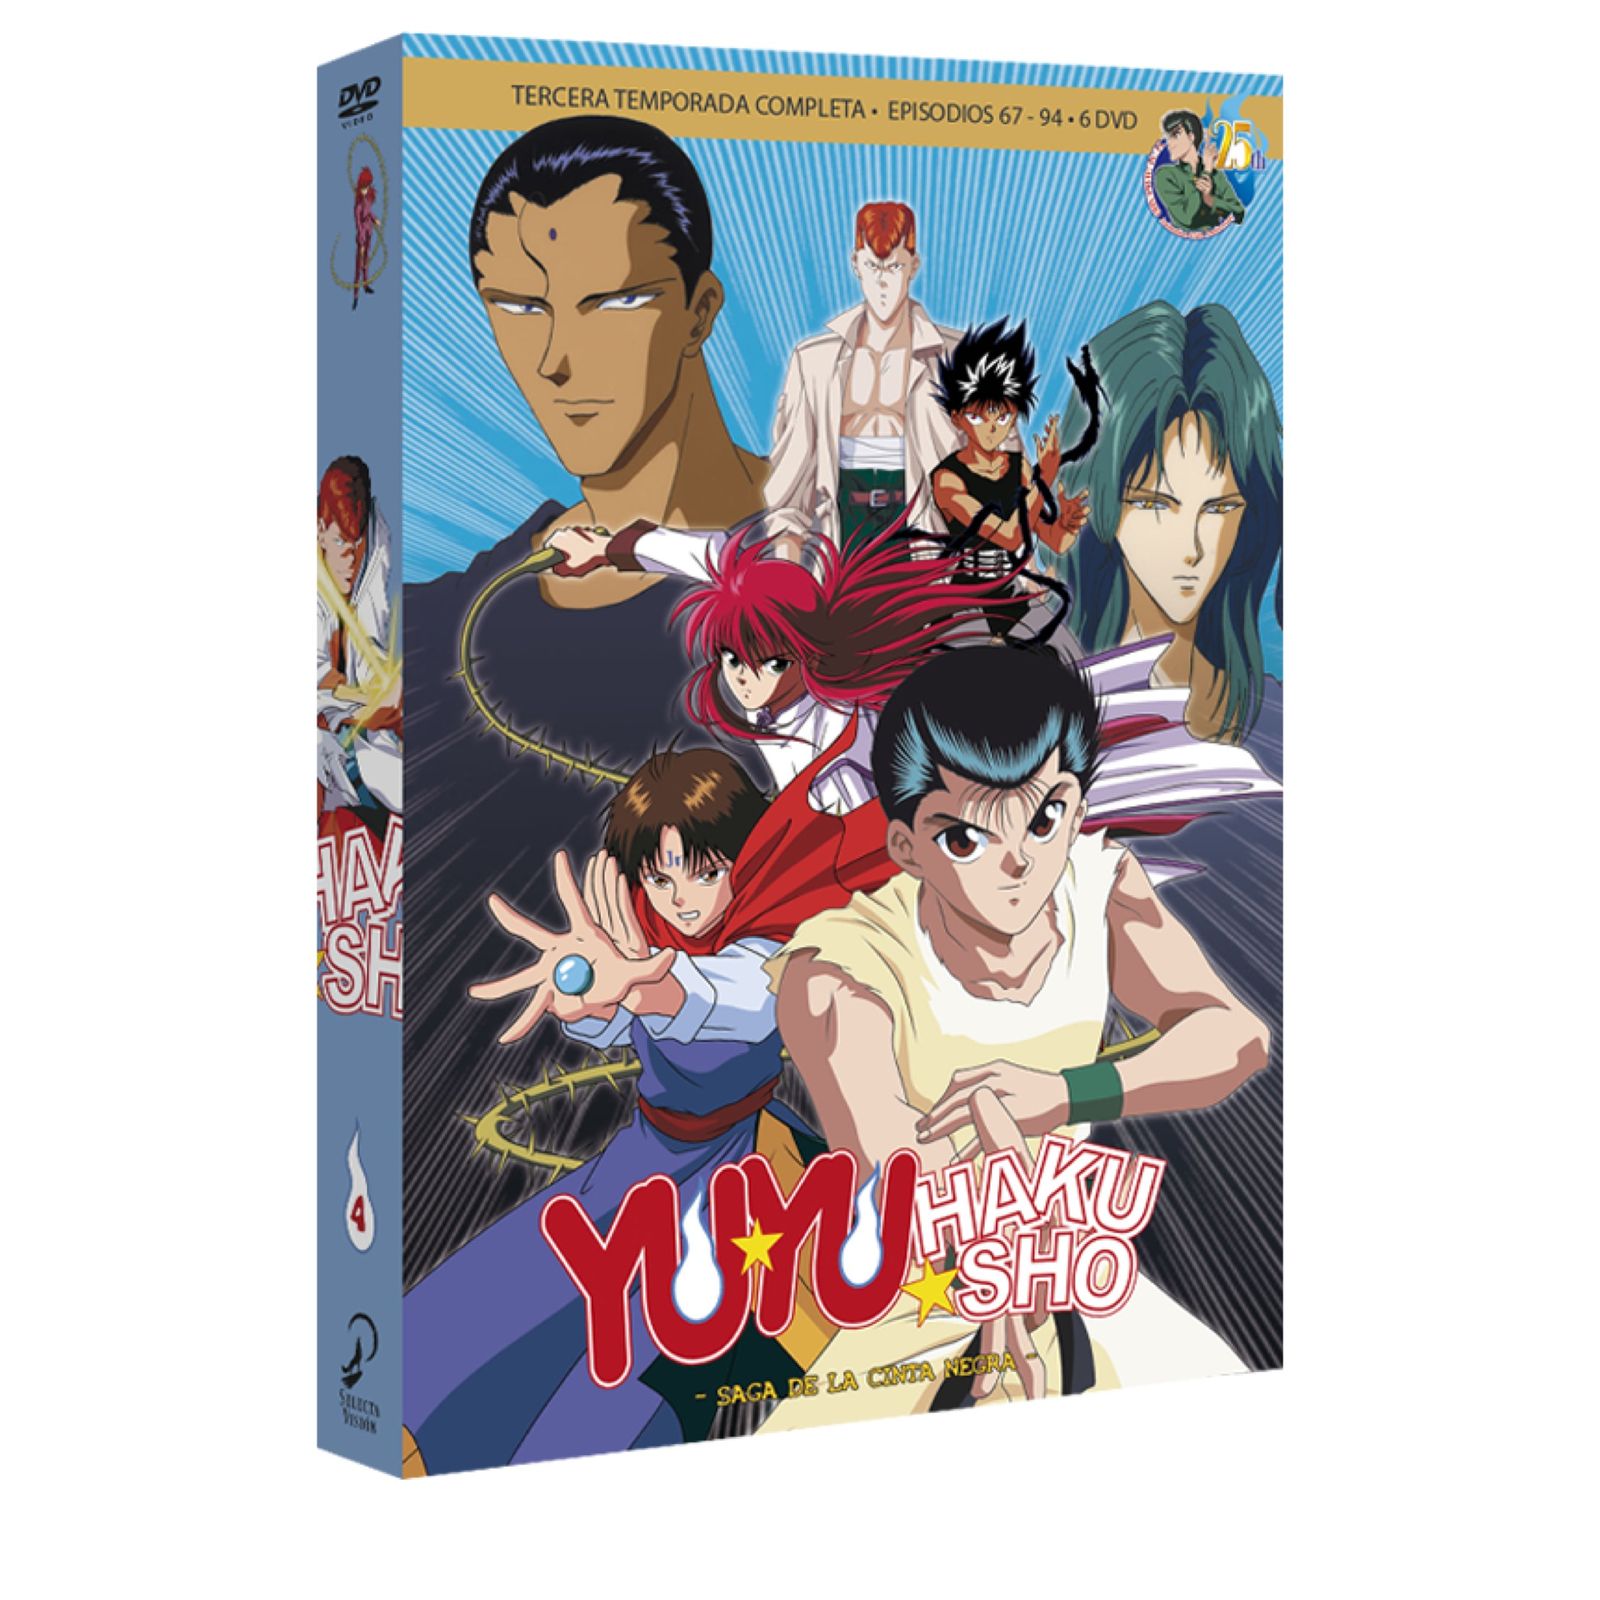 DVD YU YU HAKUSHO BOX 4. LA SAGA DE LA CINTA NEGRA